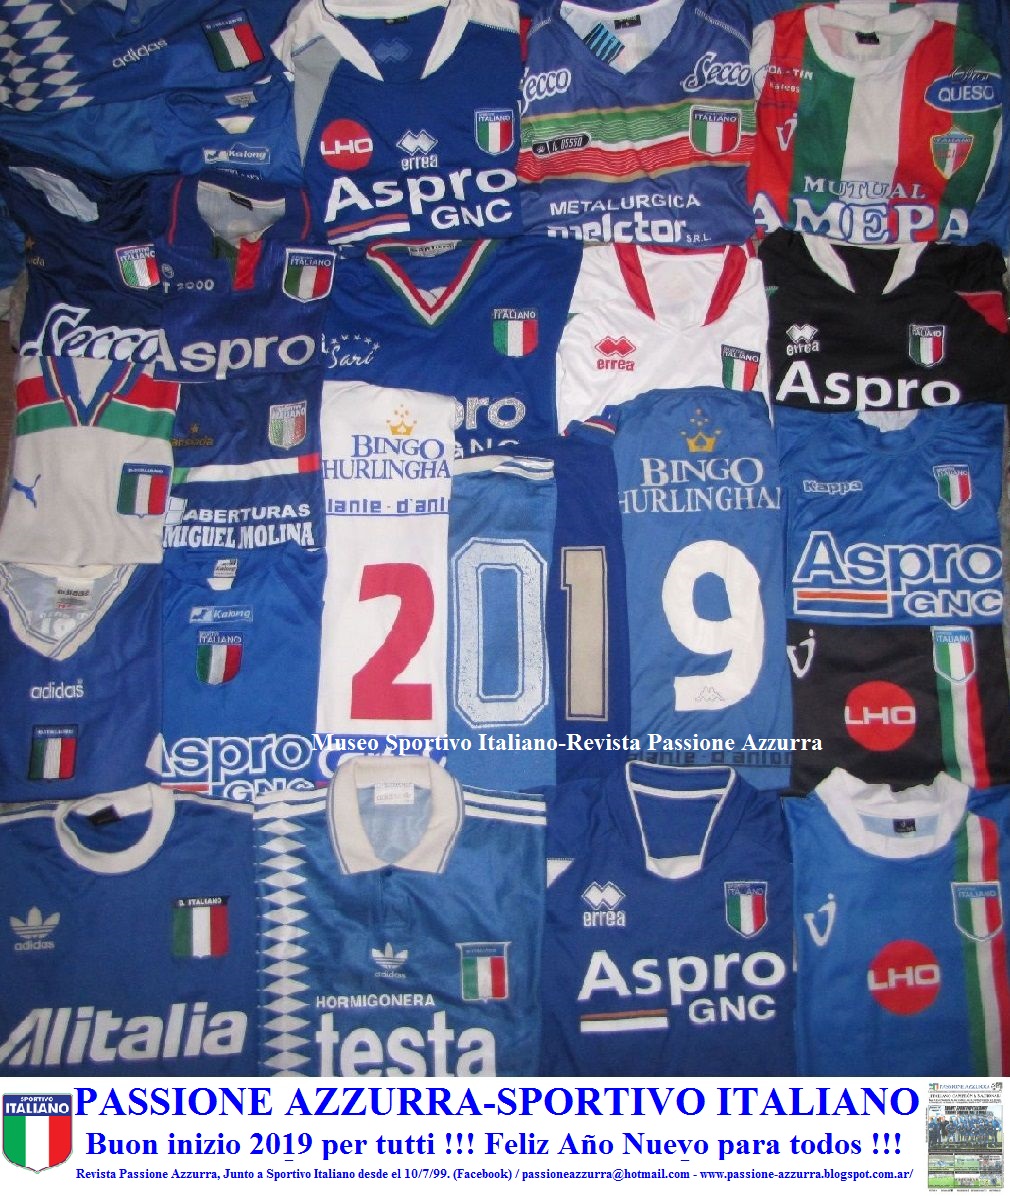 Revista Passione Azzurra-Junto al Sportivo Italiano desde el 10/7/1999